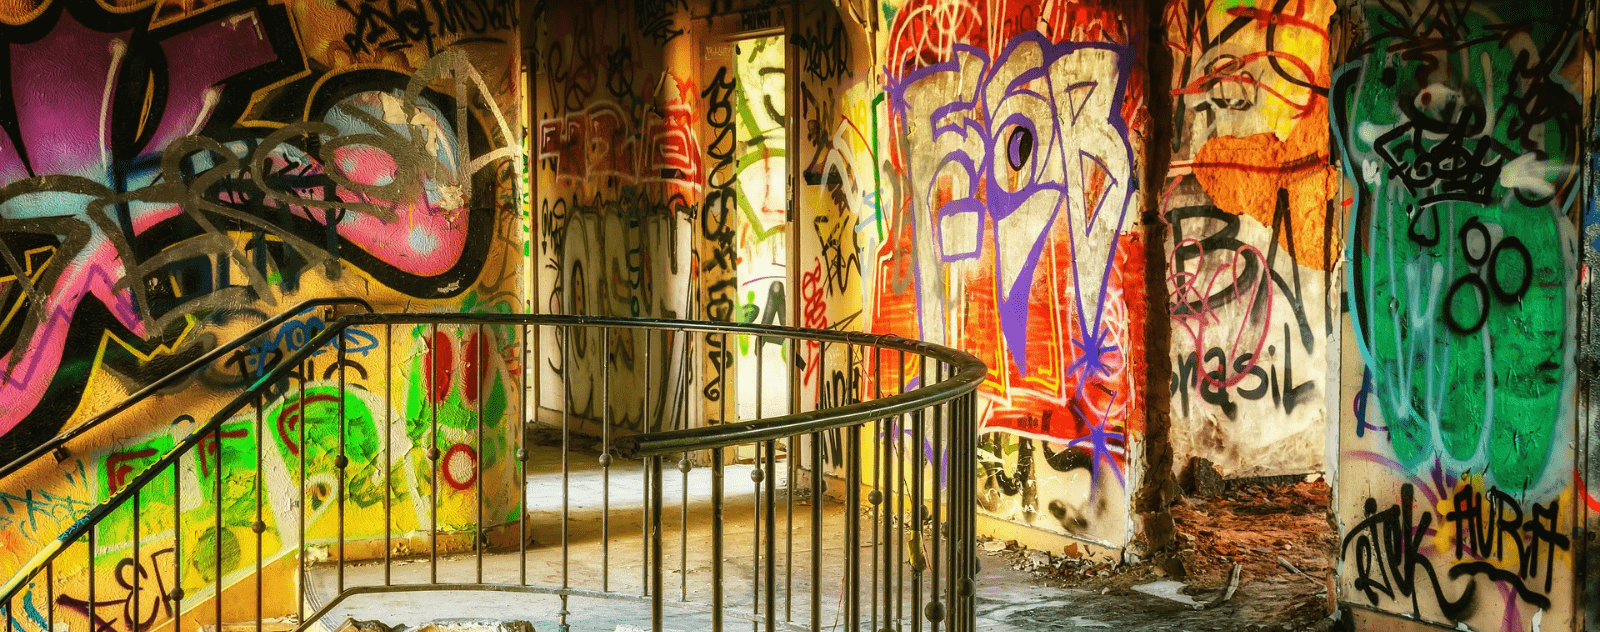 Graffitis dans un lieu abandonné